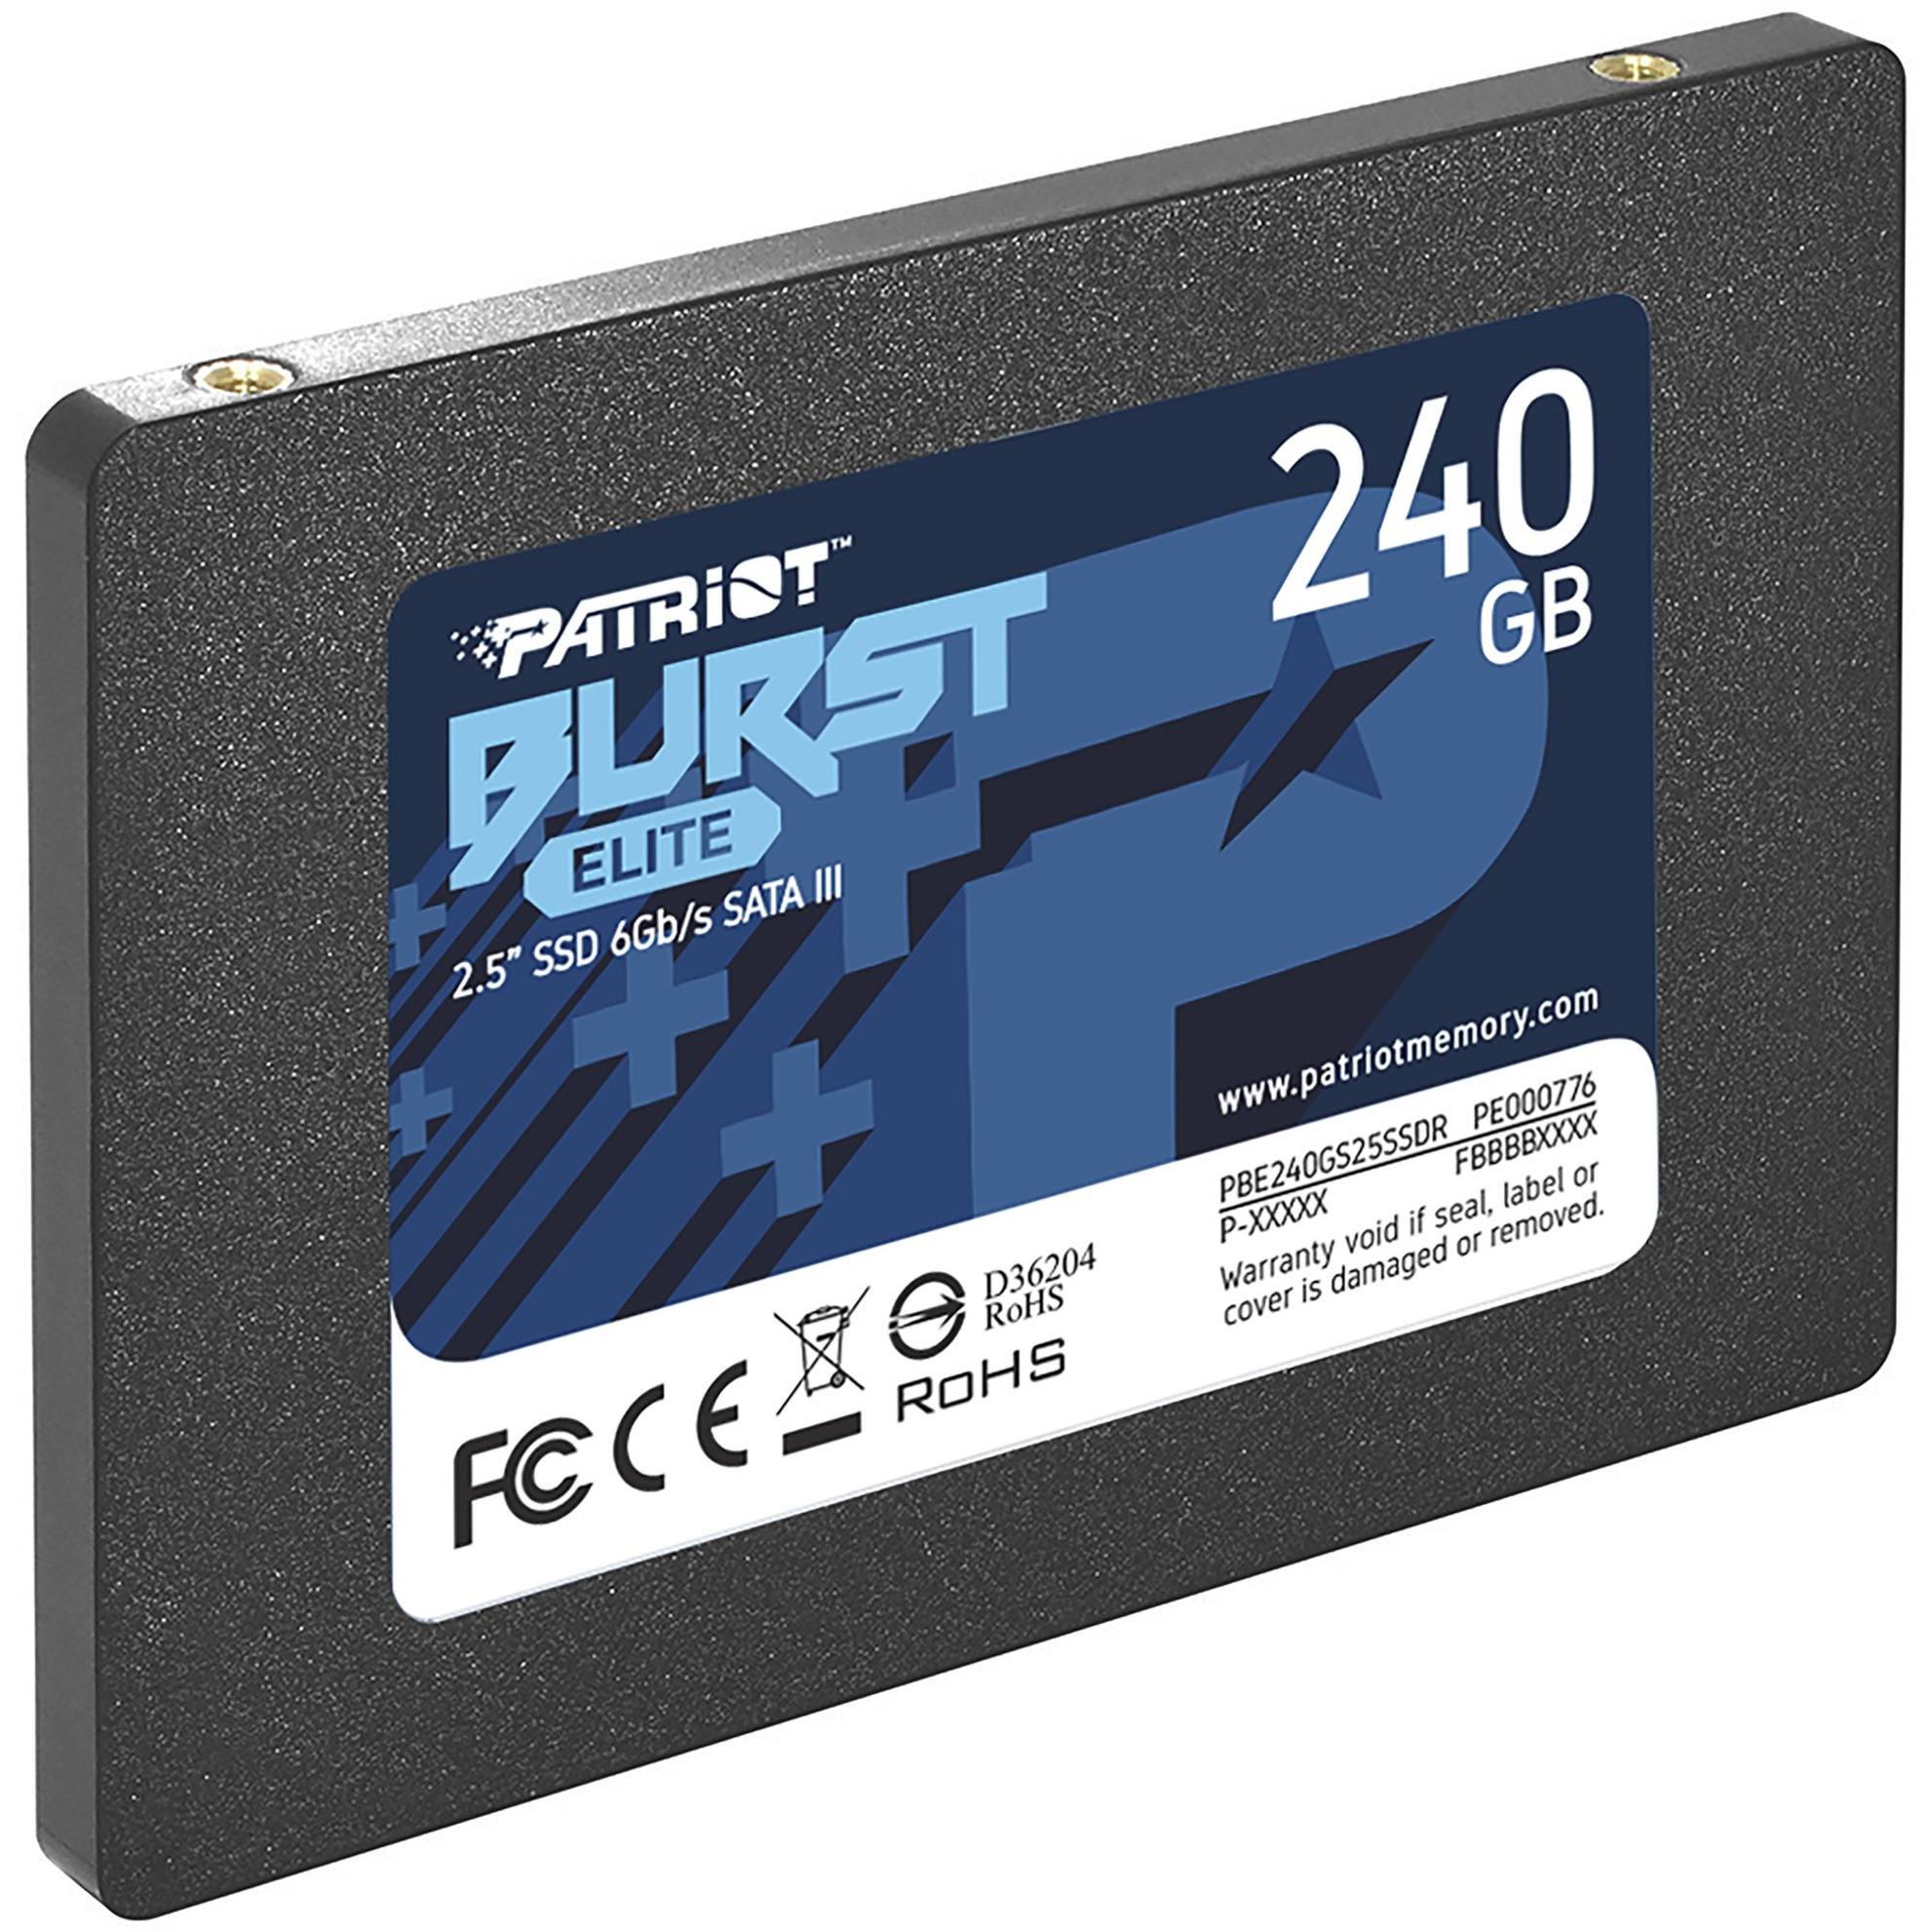 Image of Alternate - Burst Elite 240 GB, SSD online einkaufen bei Alternate